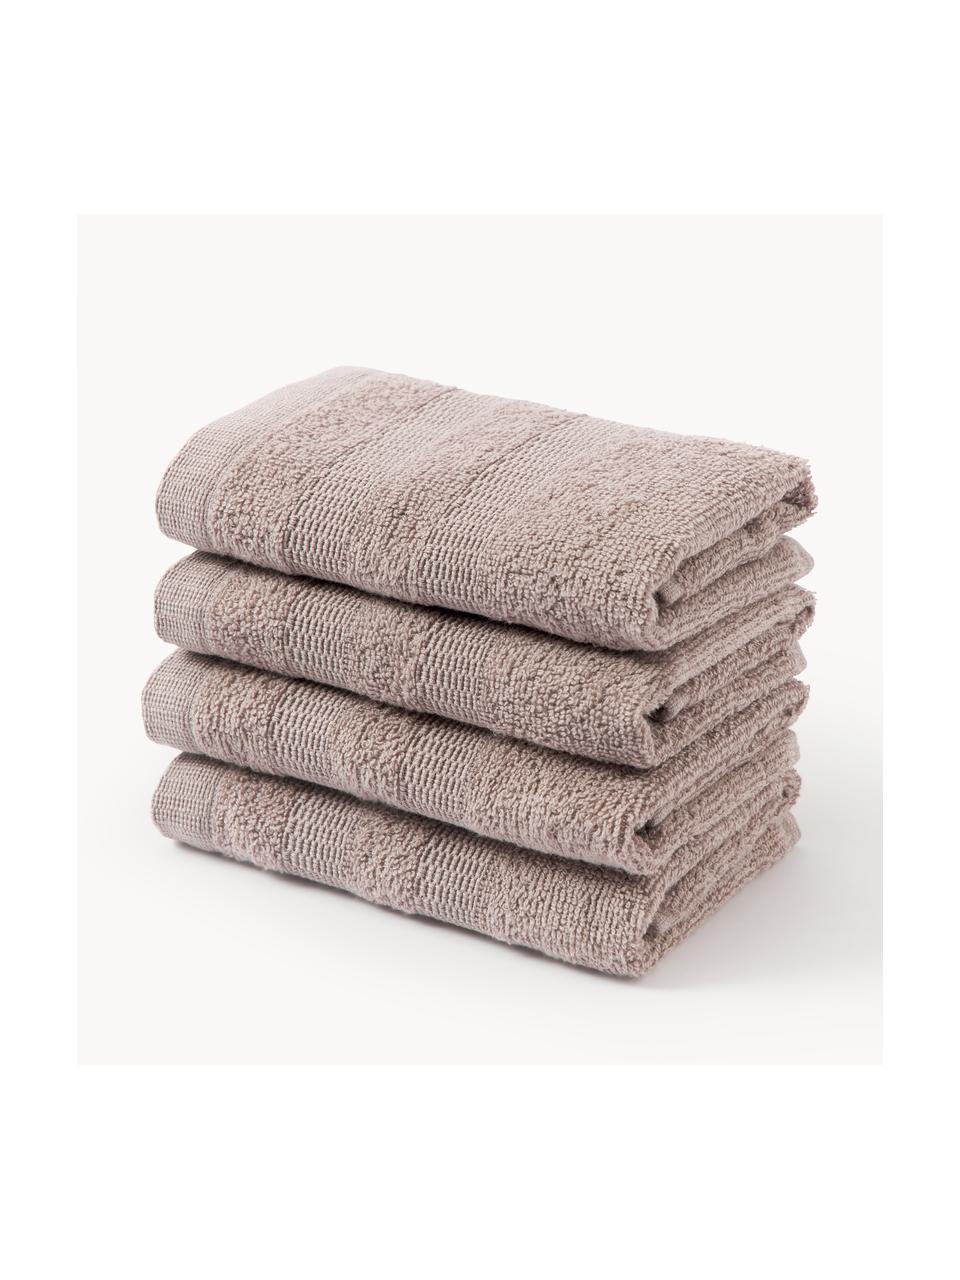 Ręcznik dla gości z bawełny Camila, 4 szt., Mauve, Ręcznik dla gości, S 30 x D 50 cm